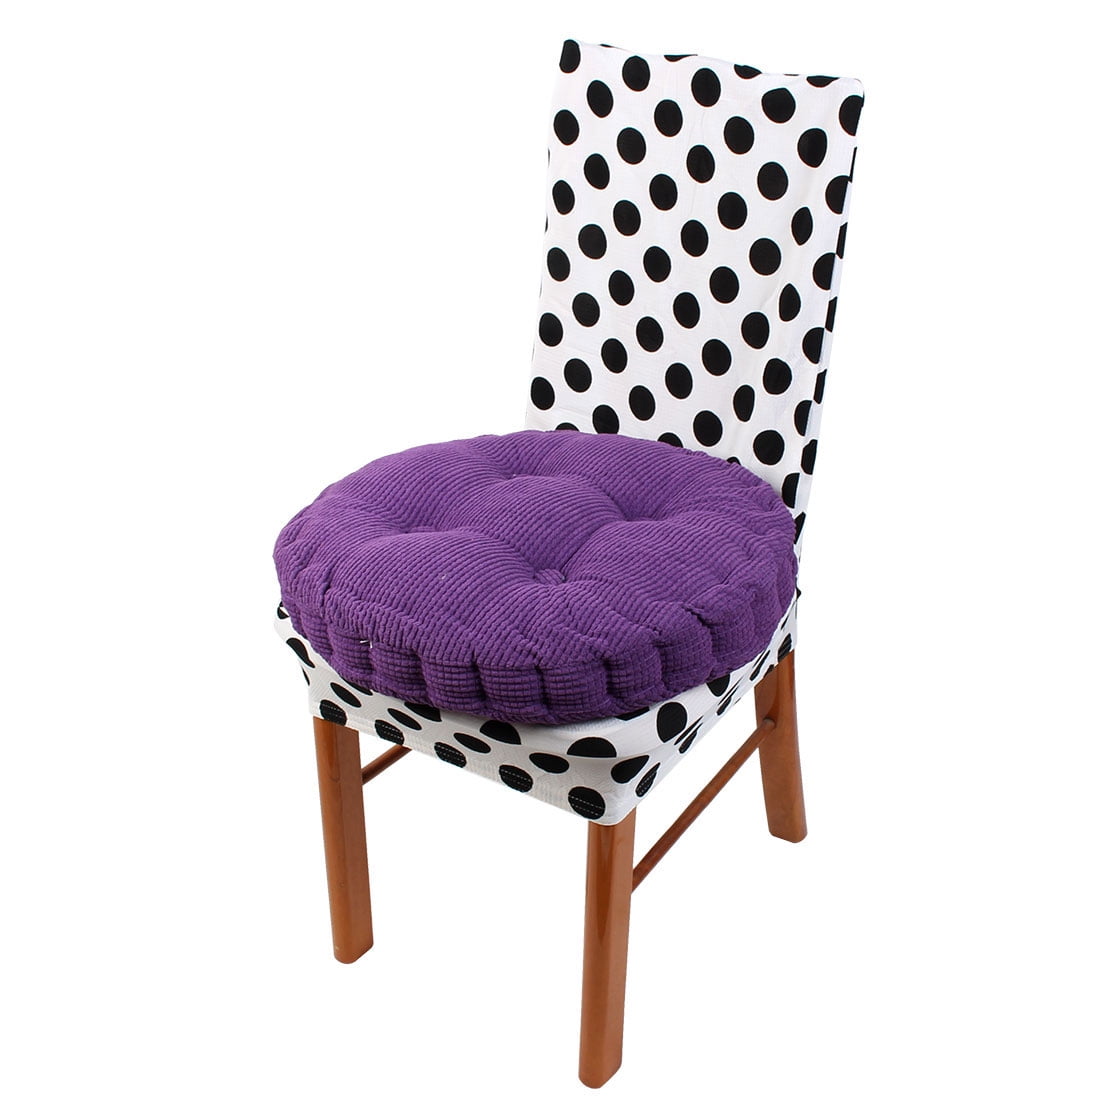 Chair Cushion Thicken Seat Pad 15.7 x 15.7 inch